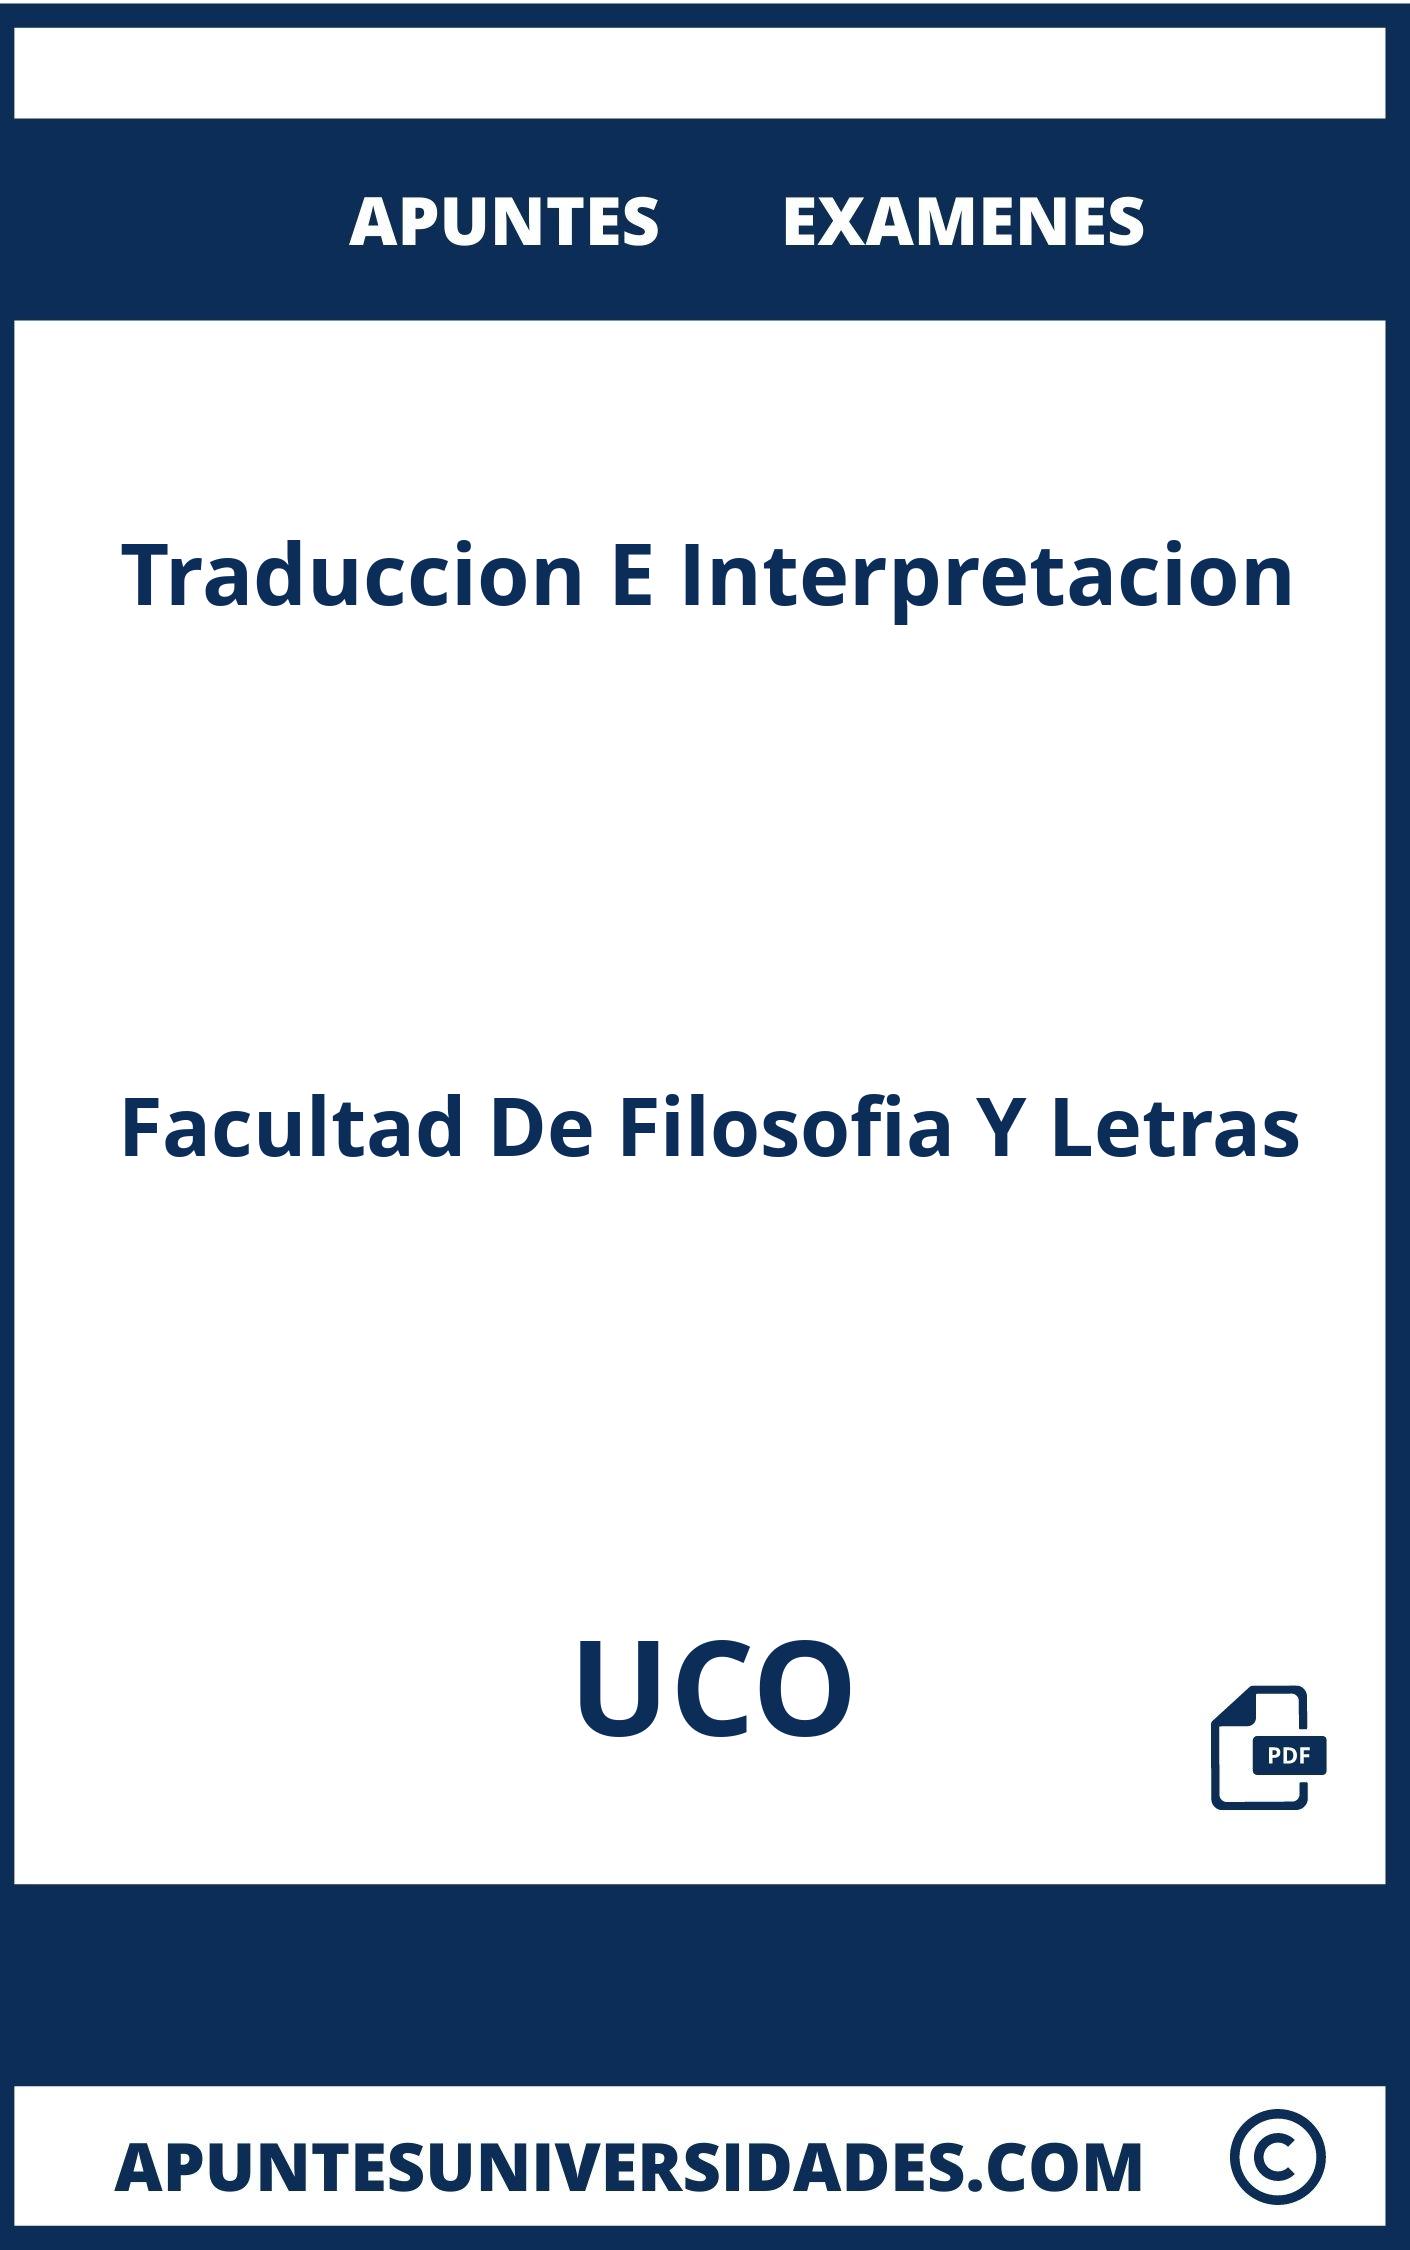 Traduccion E Interpretacion UCO Examenes Apuntes